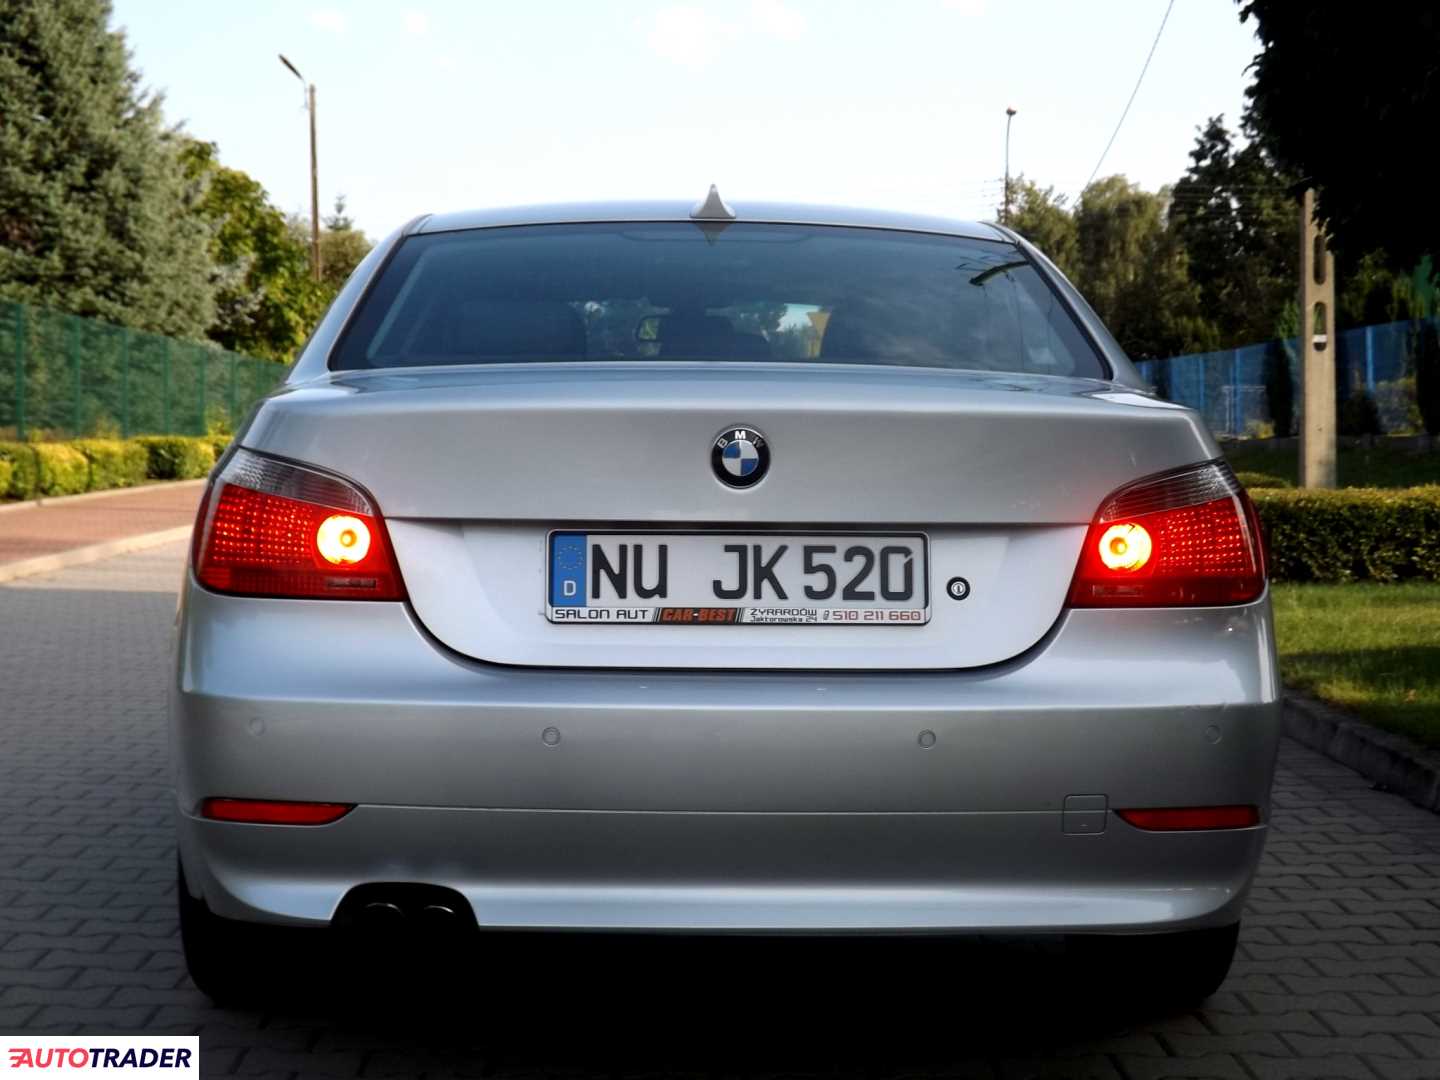 BMW 520 2.2 benzyna 170 KM 2004r. (Żyrardów) Autotrader.pl